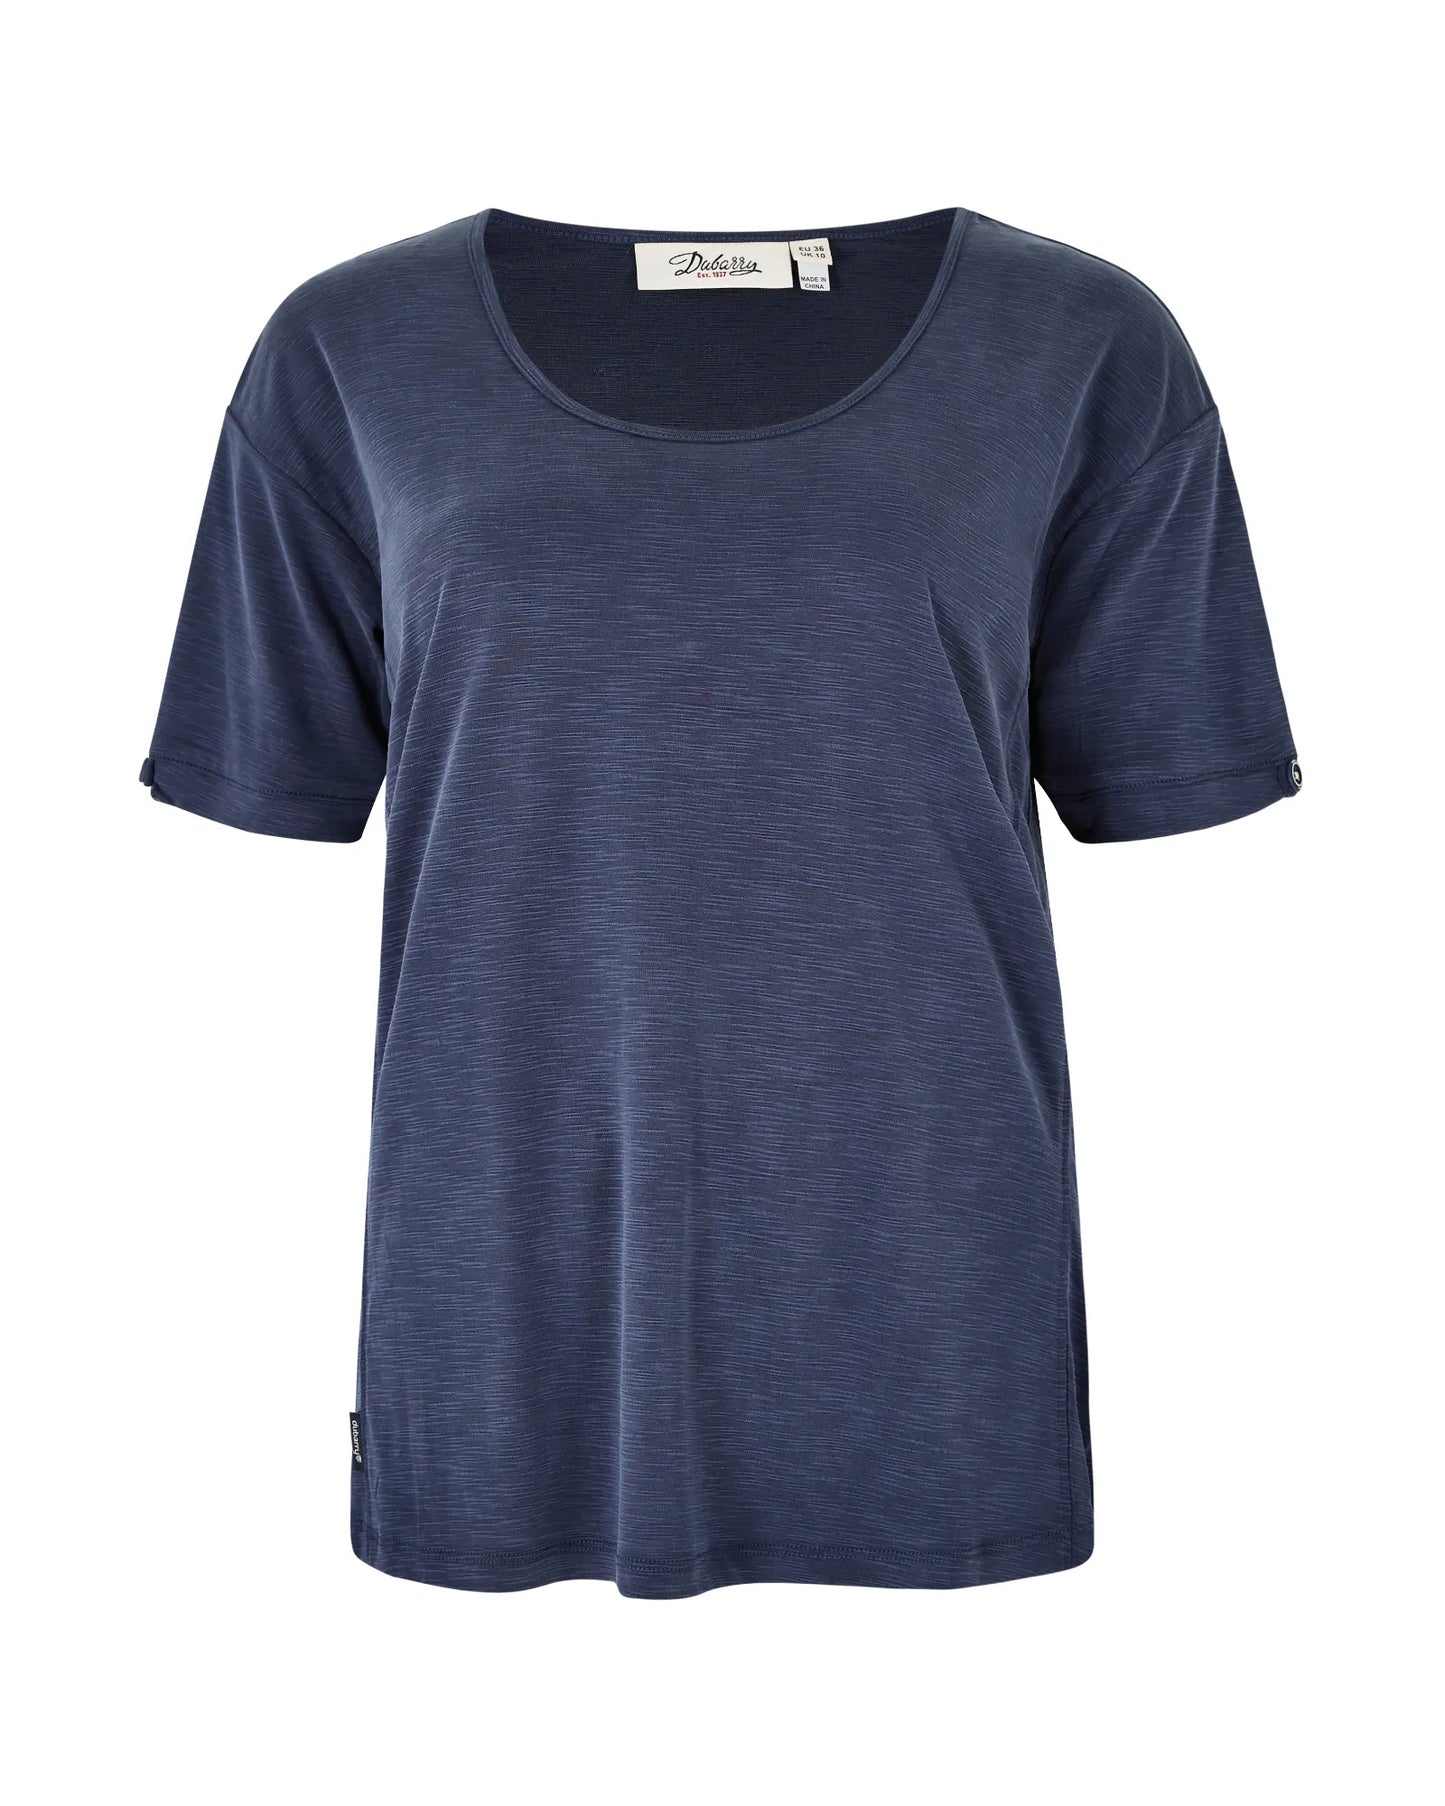 Cloyne T-Shirt - Navy